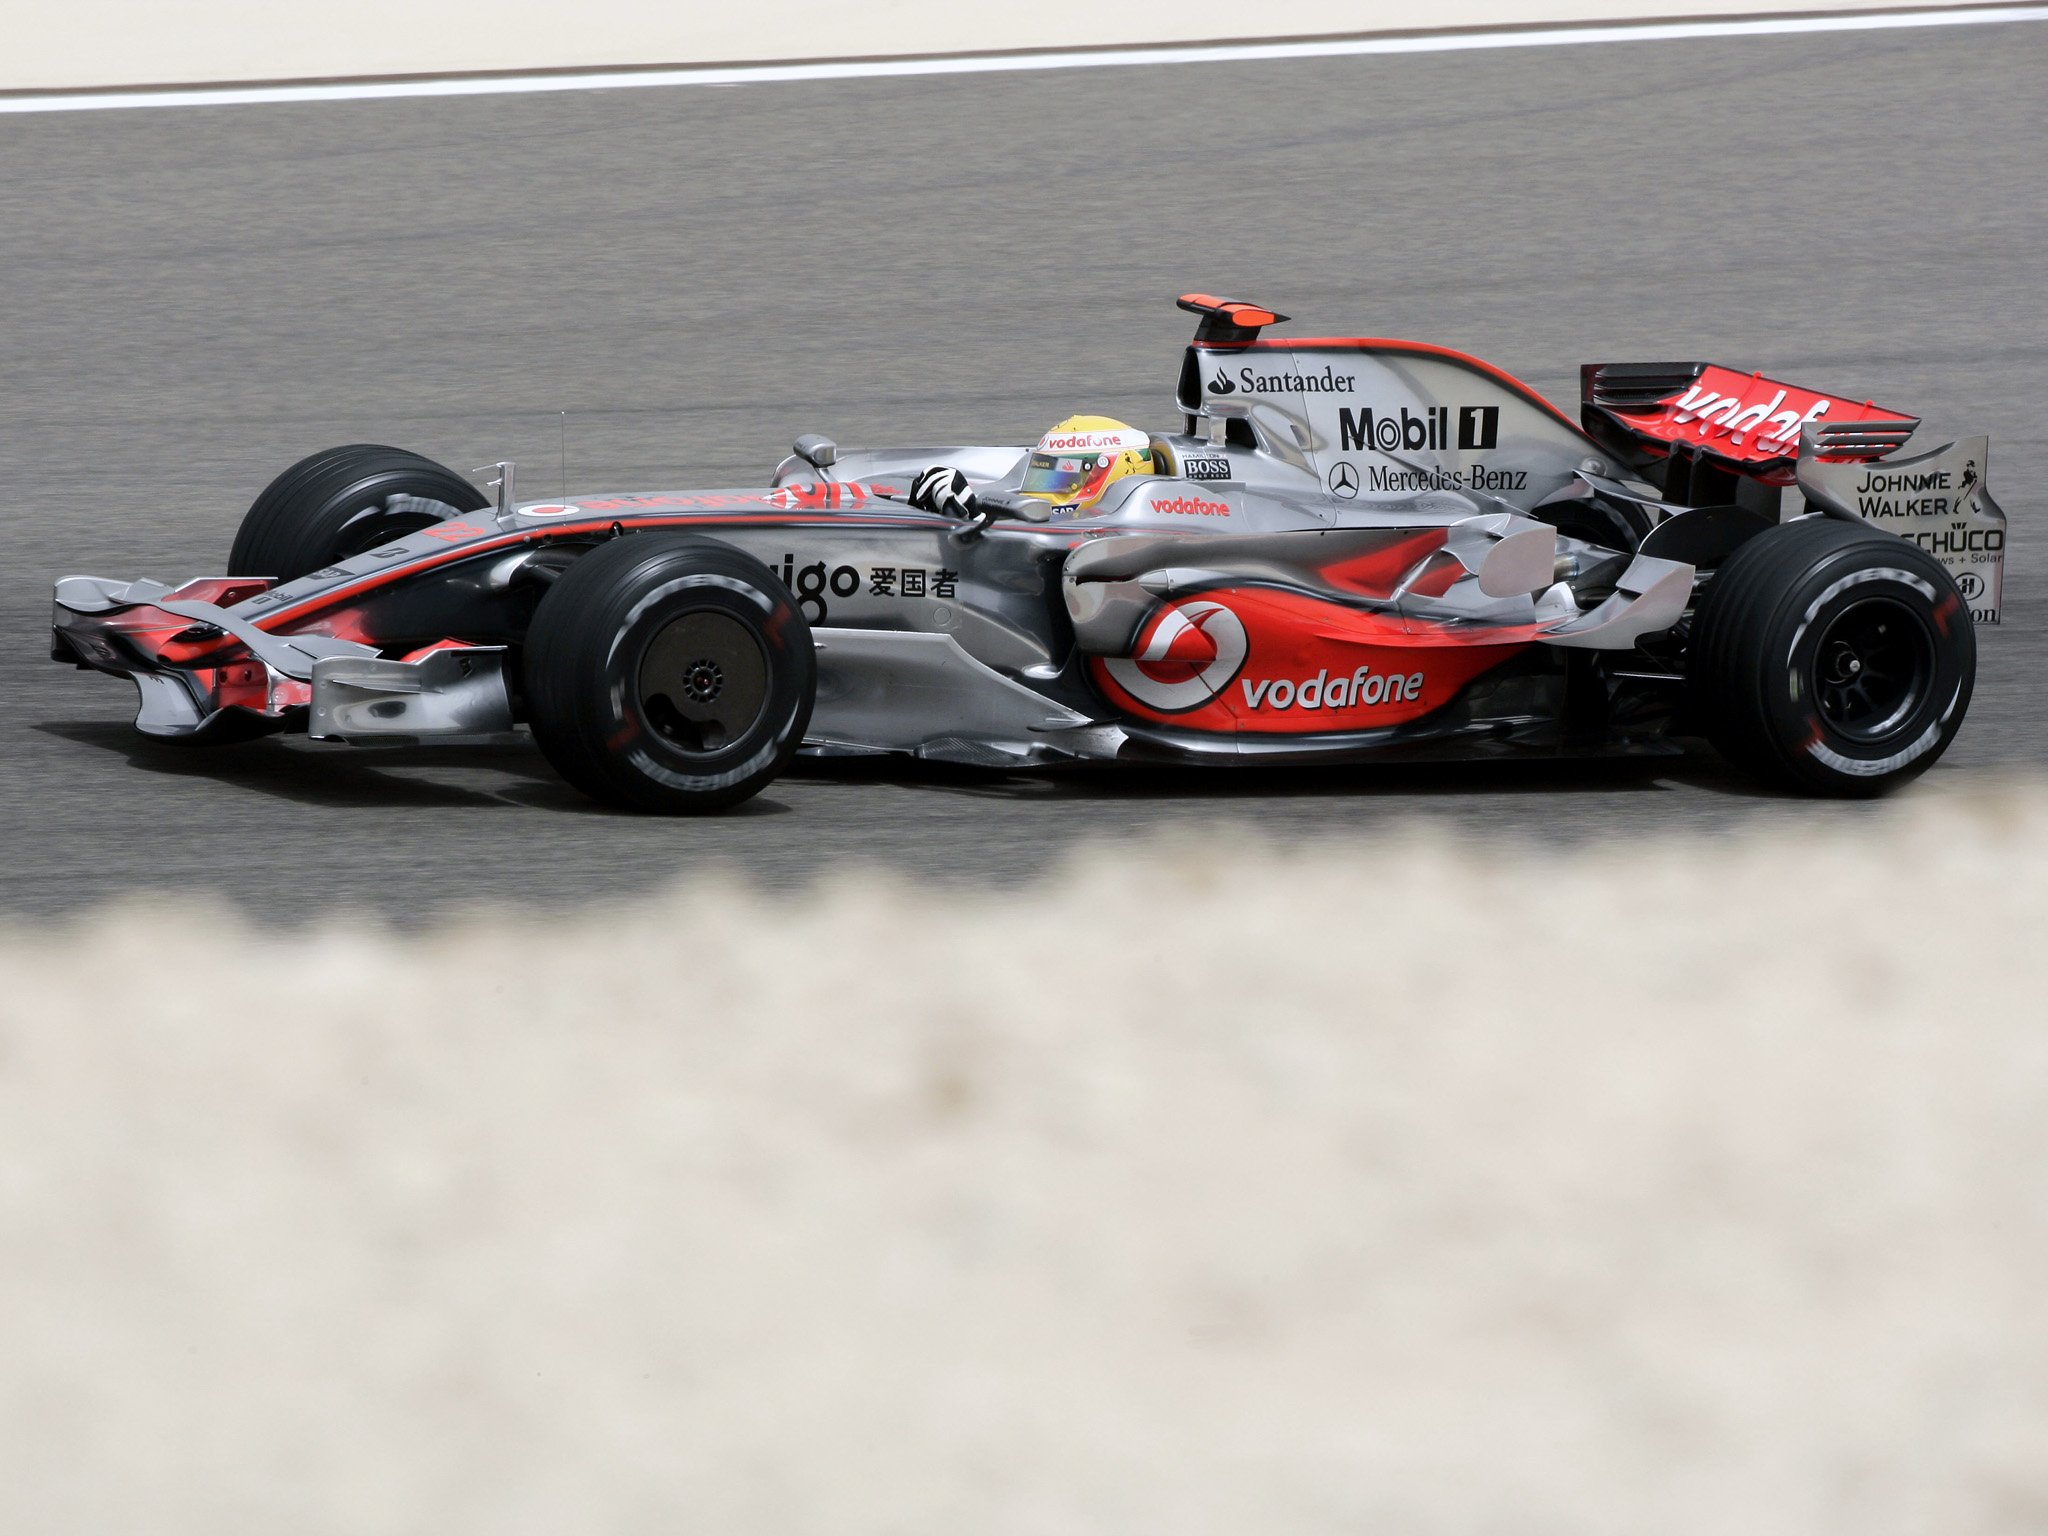 2008, Mclaren, Mercedes, Benz, Mp4 23, F 1, Formula, Race, Racing, Eu Wallpaper